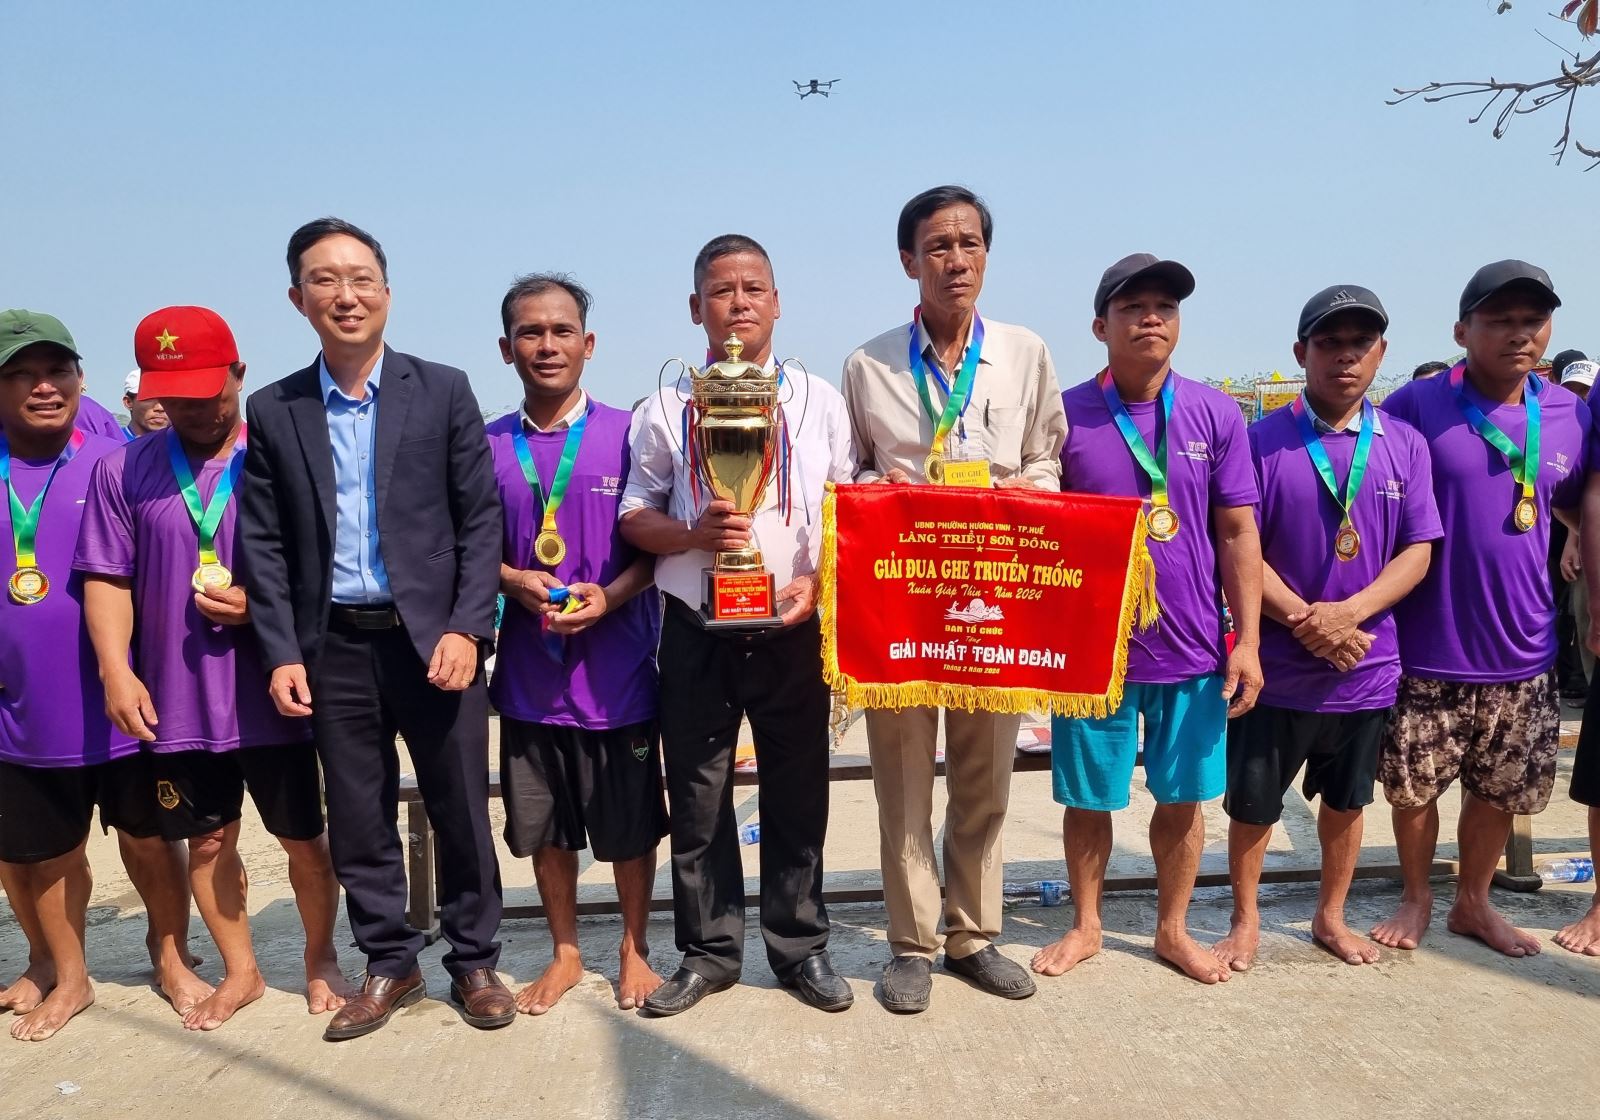 Giải nhất toàn đoàn cho đội ghe Thanh Hà, xã Quảng Thành, huyện Quảng Điền.